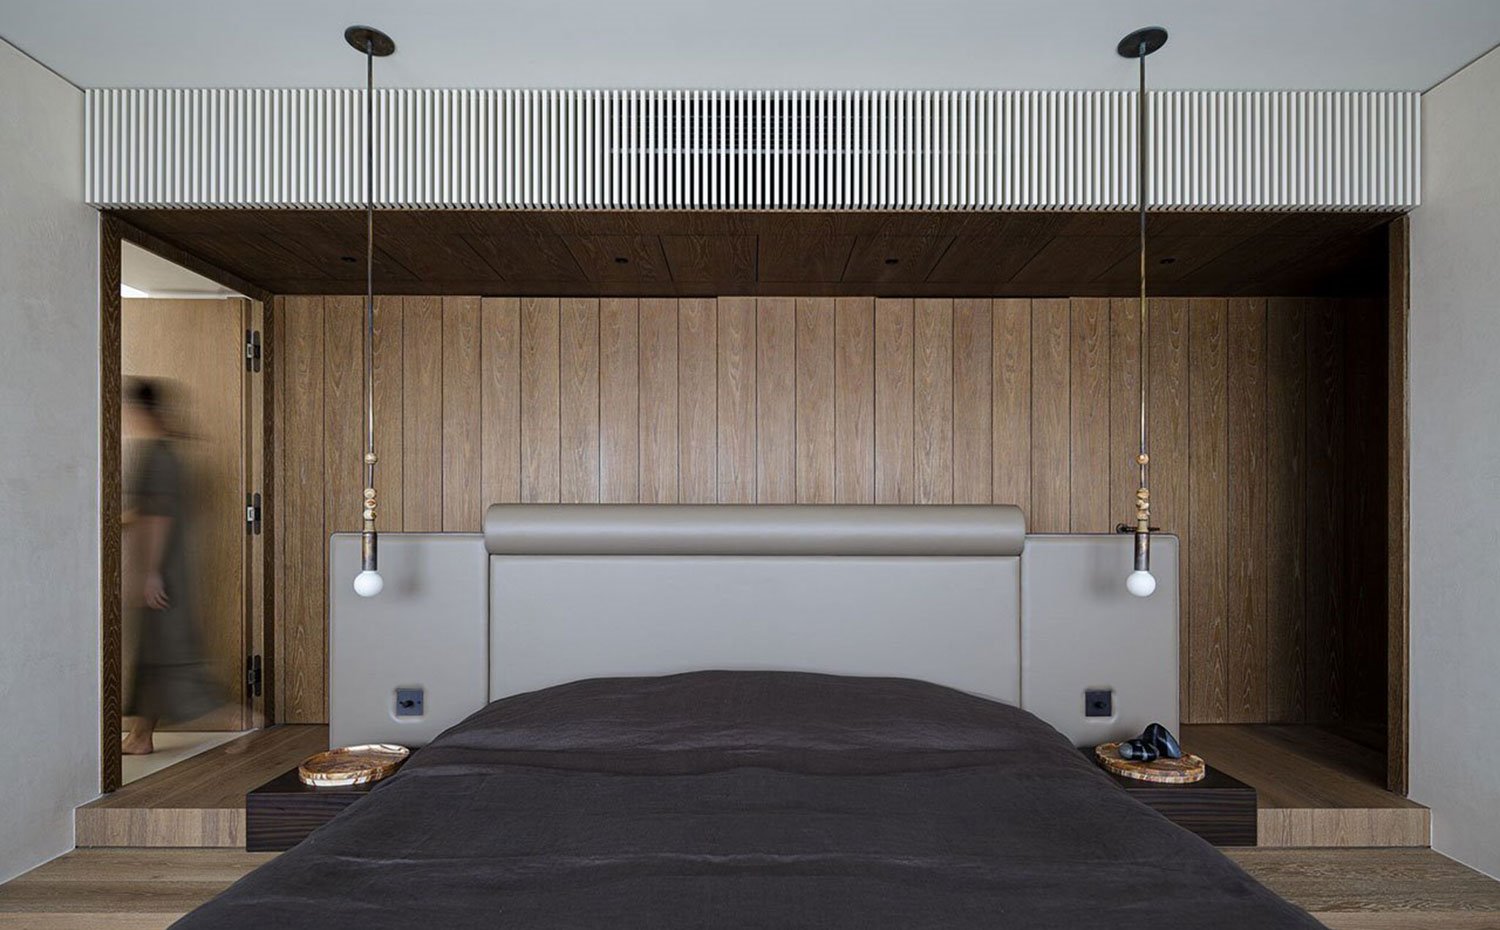 Dormitorio con suelo y revestimiento frontal de madera alistonado, cabezal tapizado en piel, luminarias suspendidas del techo